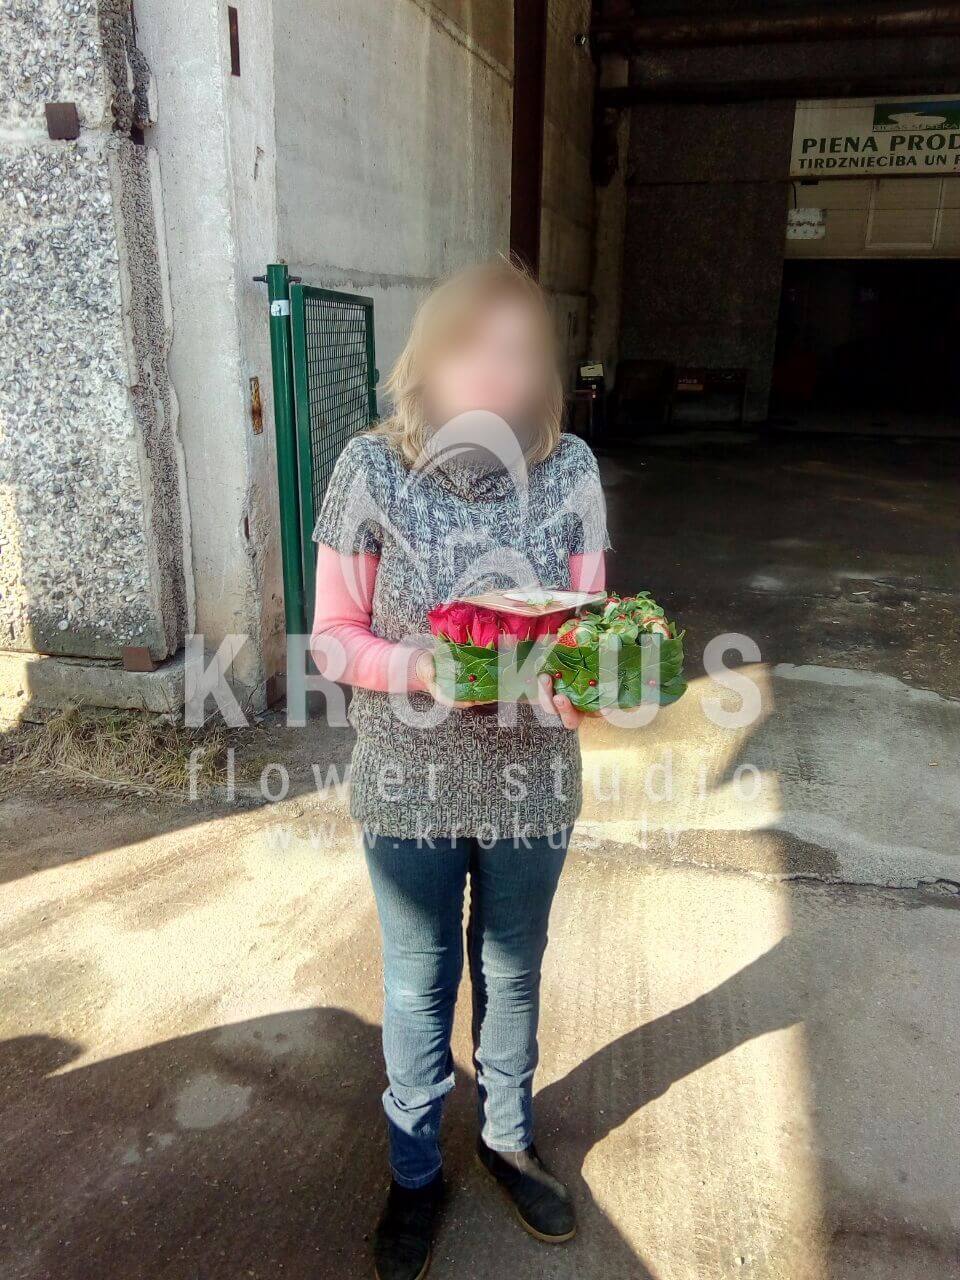 Доставка цветов в город Latvia (красные розысалал)